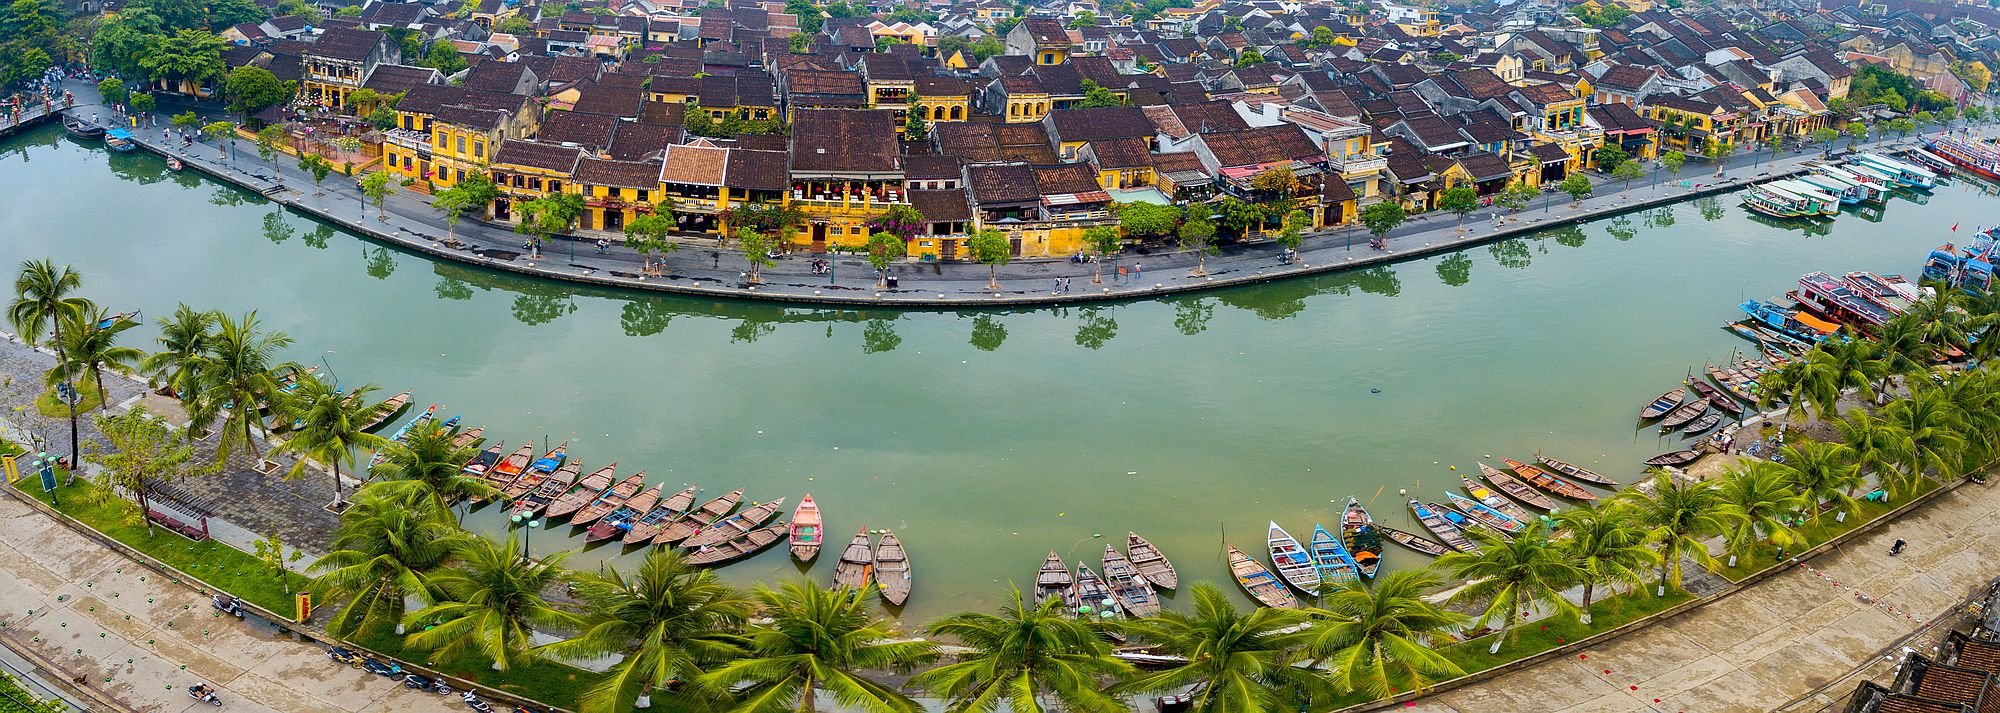 Blog artikel 'Quiz: Ben jij een échte Vietnam kenner?'